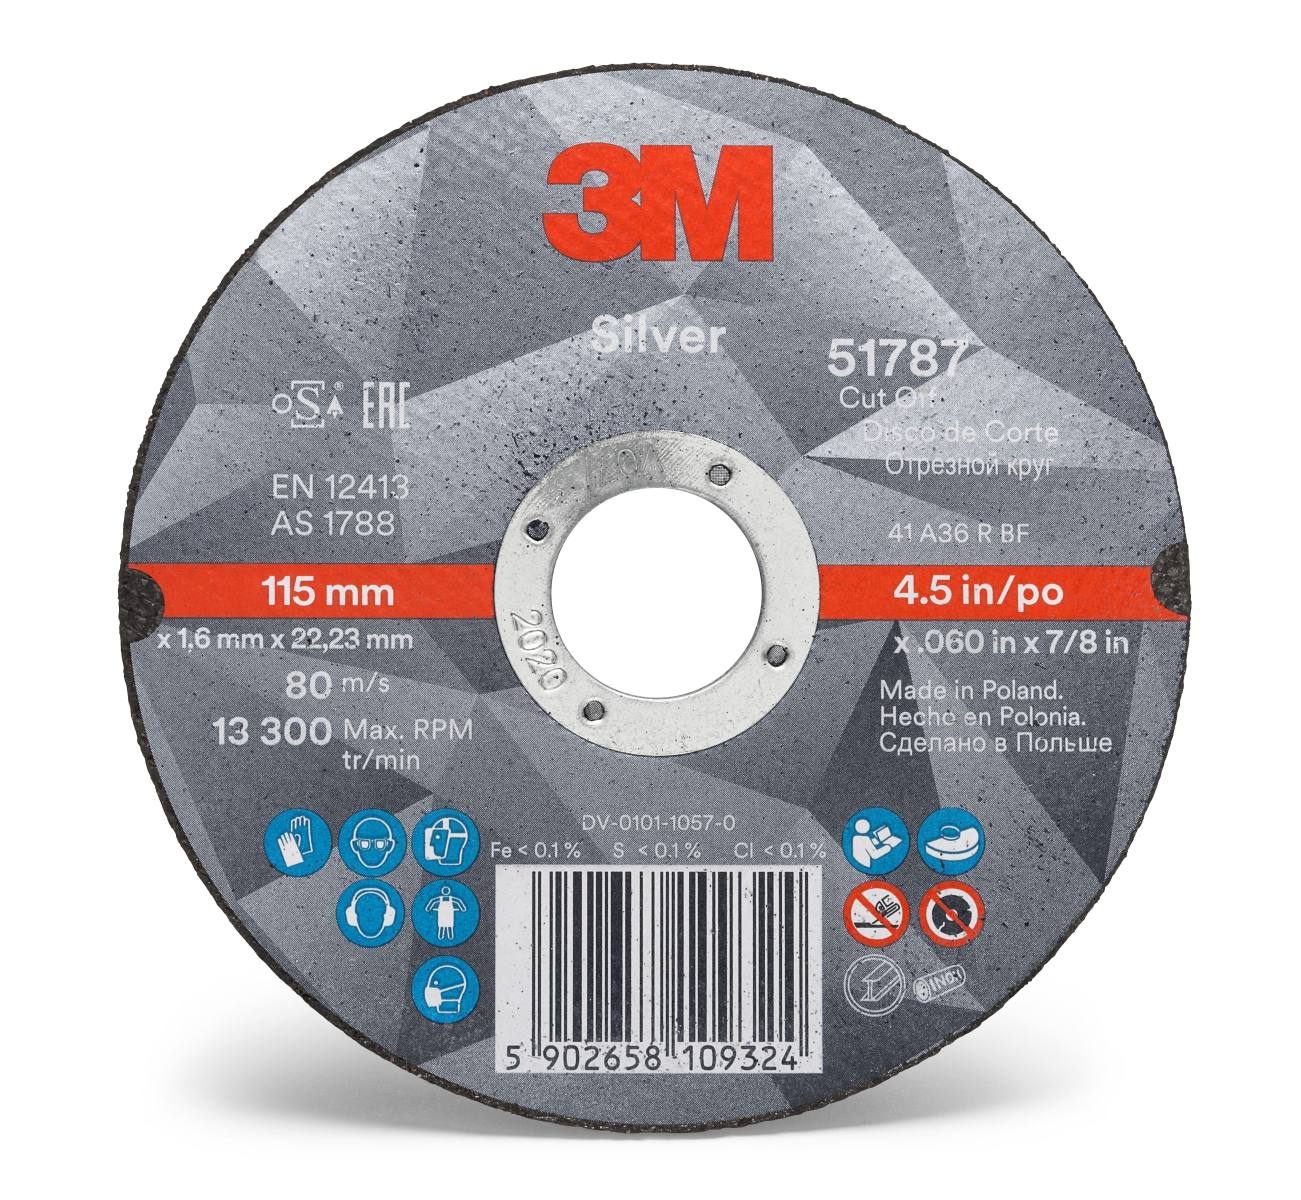 3M Silver Cut-Off Wheel Disque à tronçonner, 115 mm, 2,5 mm, 22,23 mm, T42, 51800